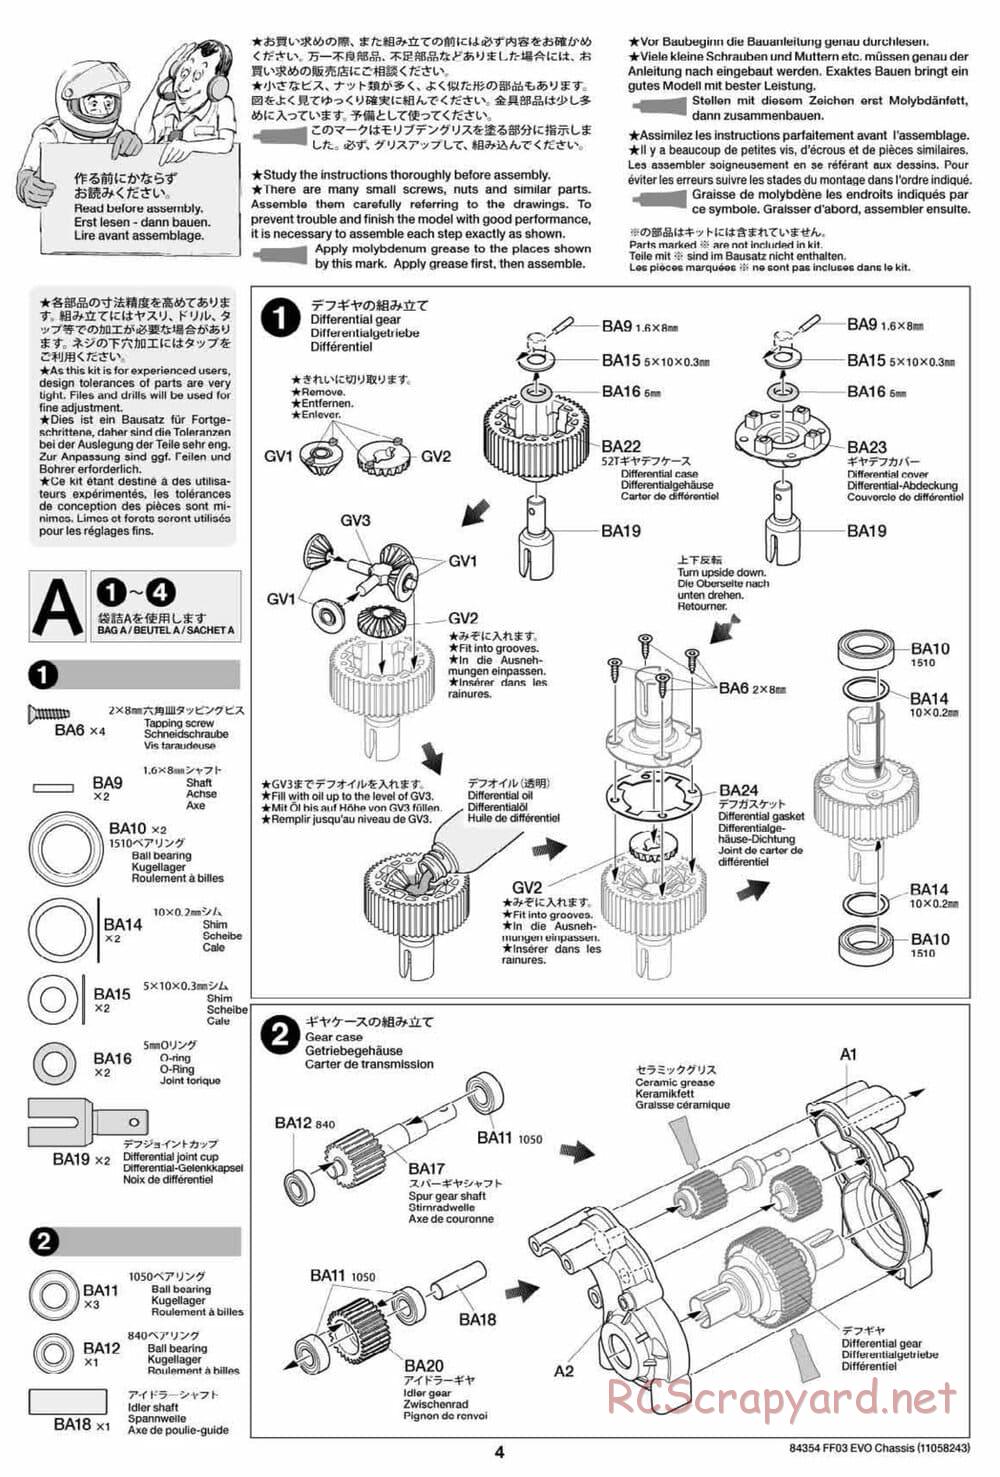 Tamiya - FF-03 Evo Chassis - Manual - Page 4